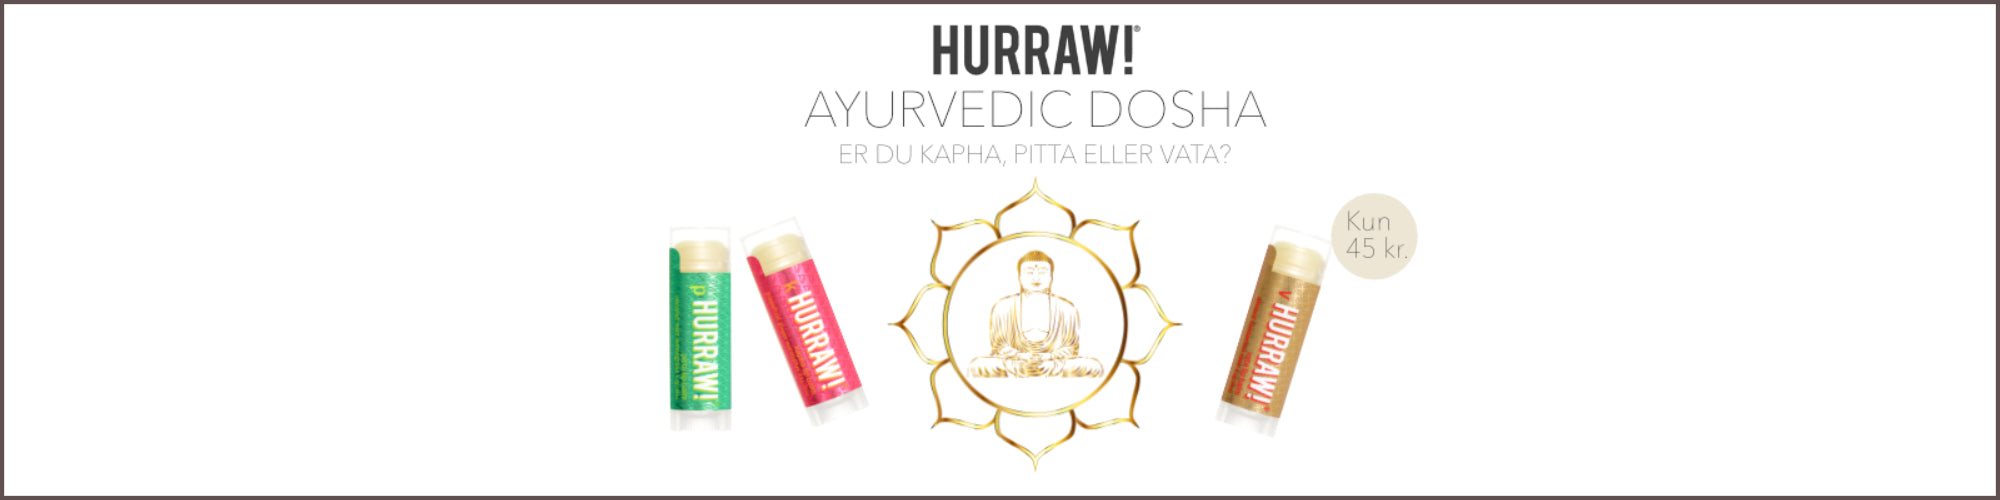 Ayurvedic Dosha varianter af HURRAW læbepomader